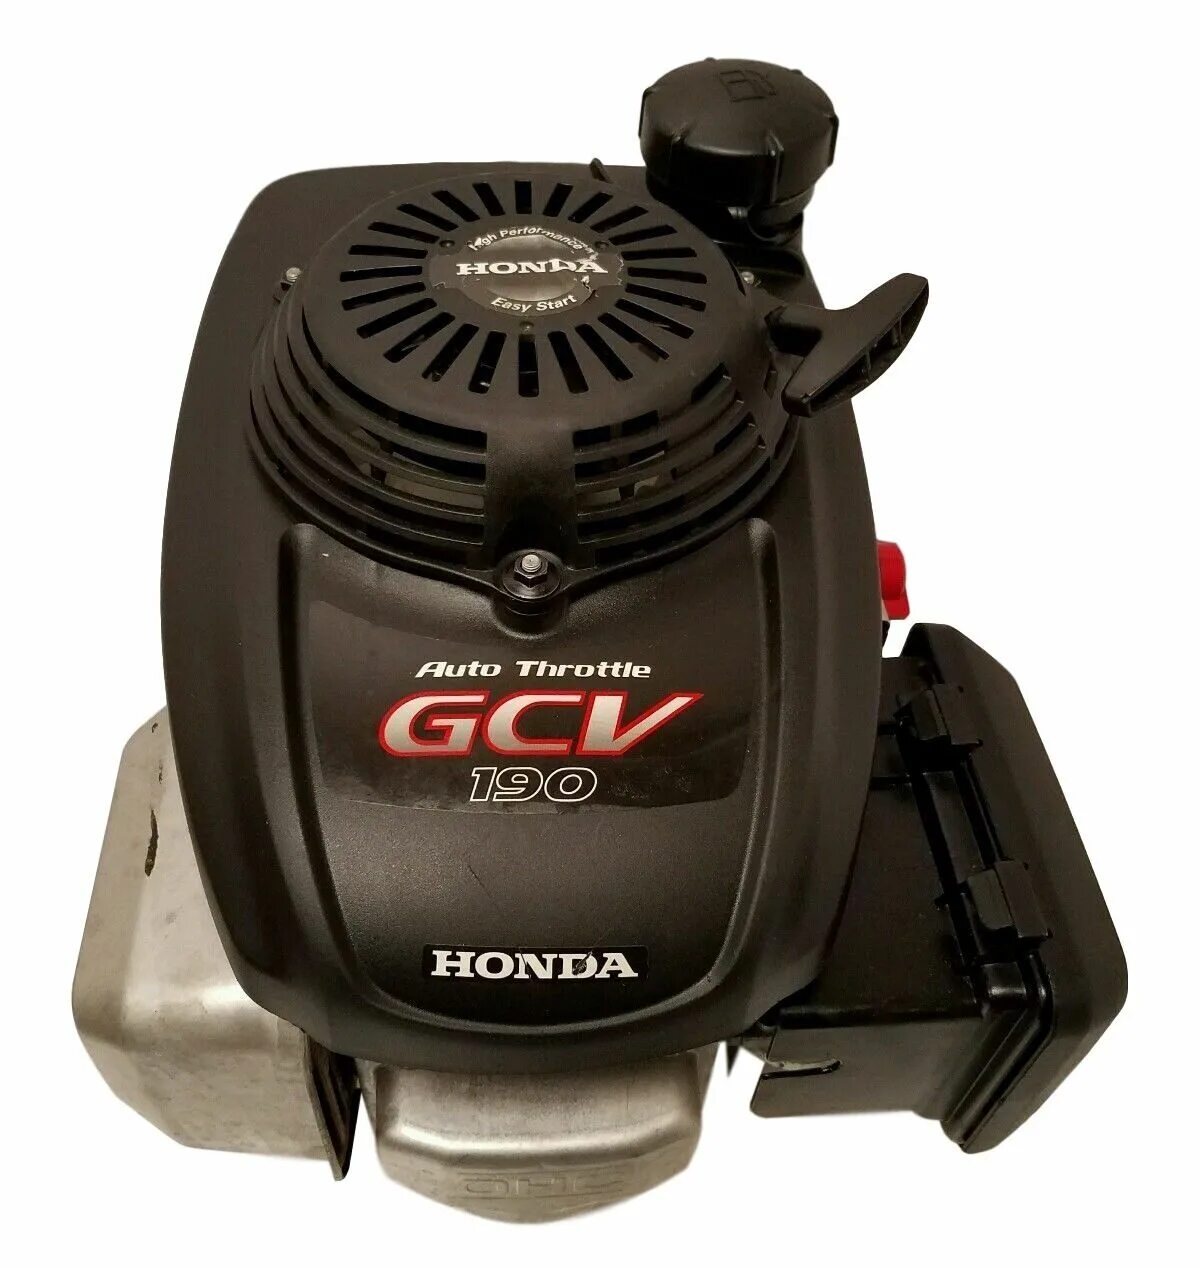 Мотор с вертикальным валом. Двигатель Honda GCV-190. Мотор Honda GCV 160. Хонда GCV 160 С вертикальным валом для газонокосилки. Honda gcv190 6,5 газонокосилка.